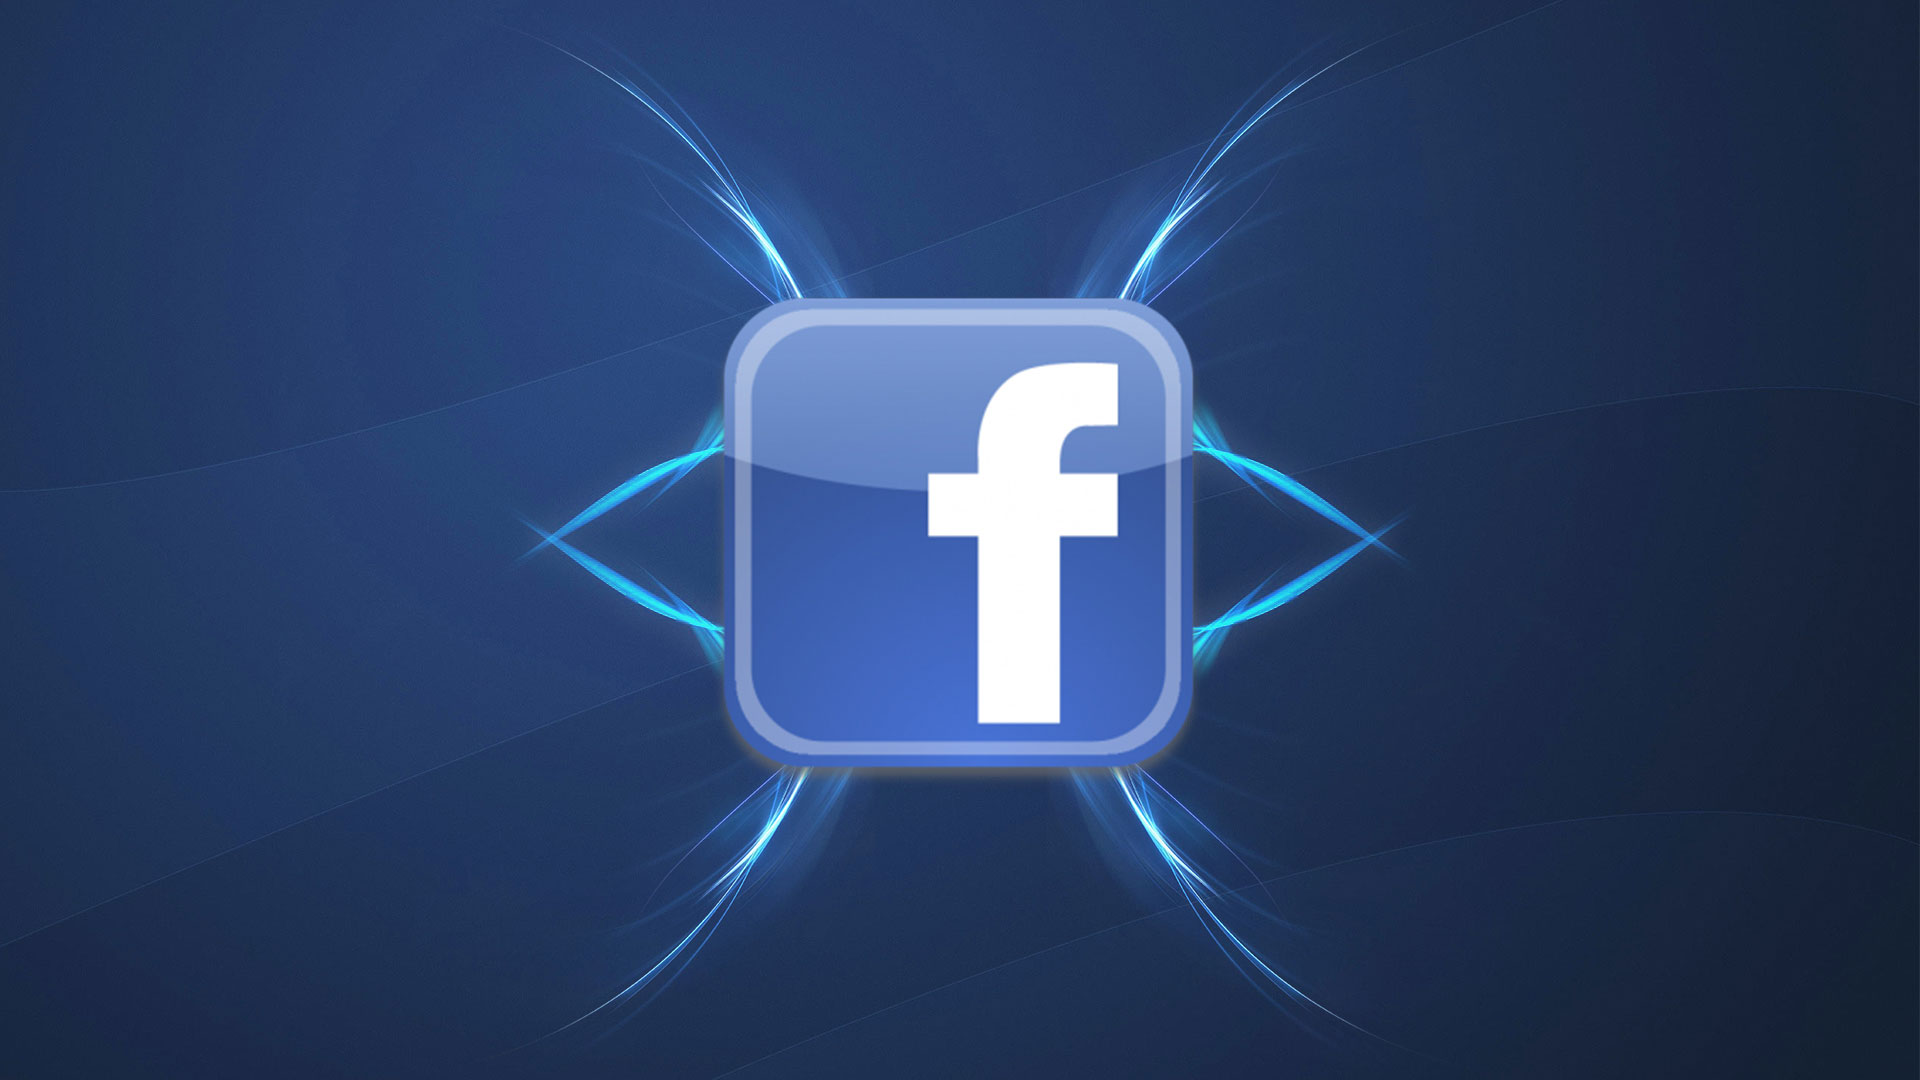 设计 品牌 facebook高清手机壁纸免费下载,安心市场